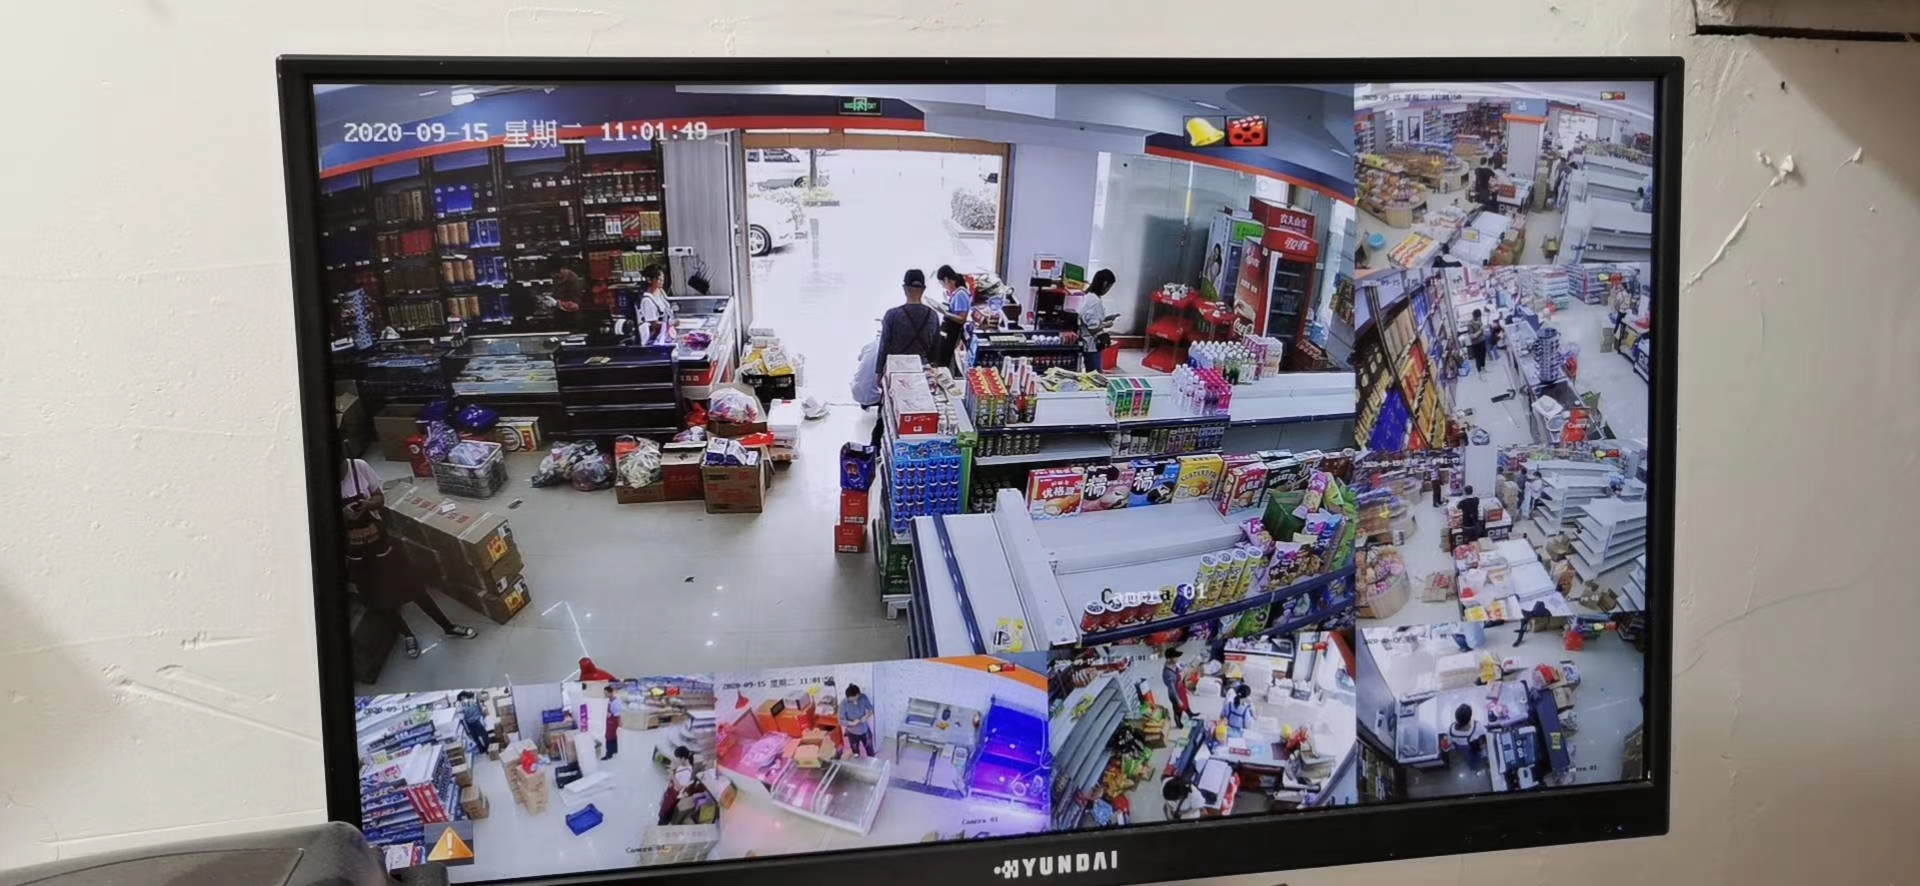 超市視頻監控系統